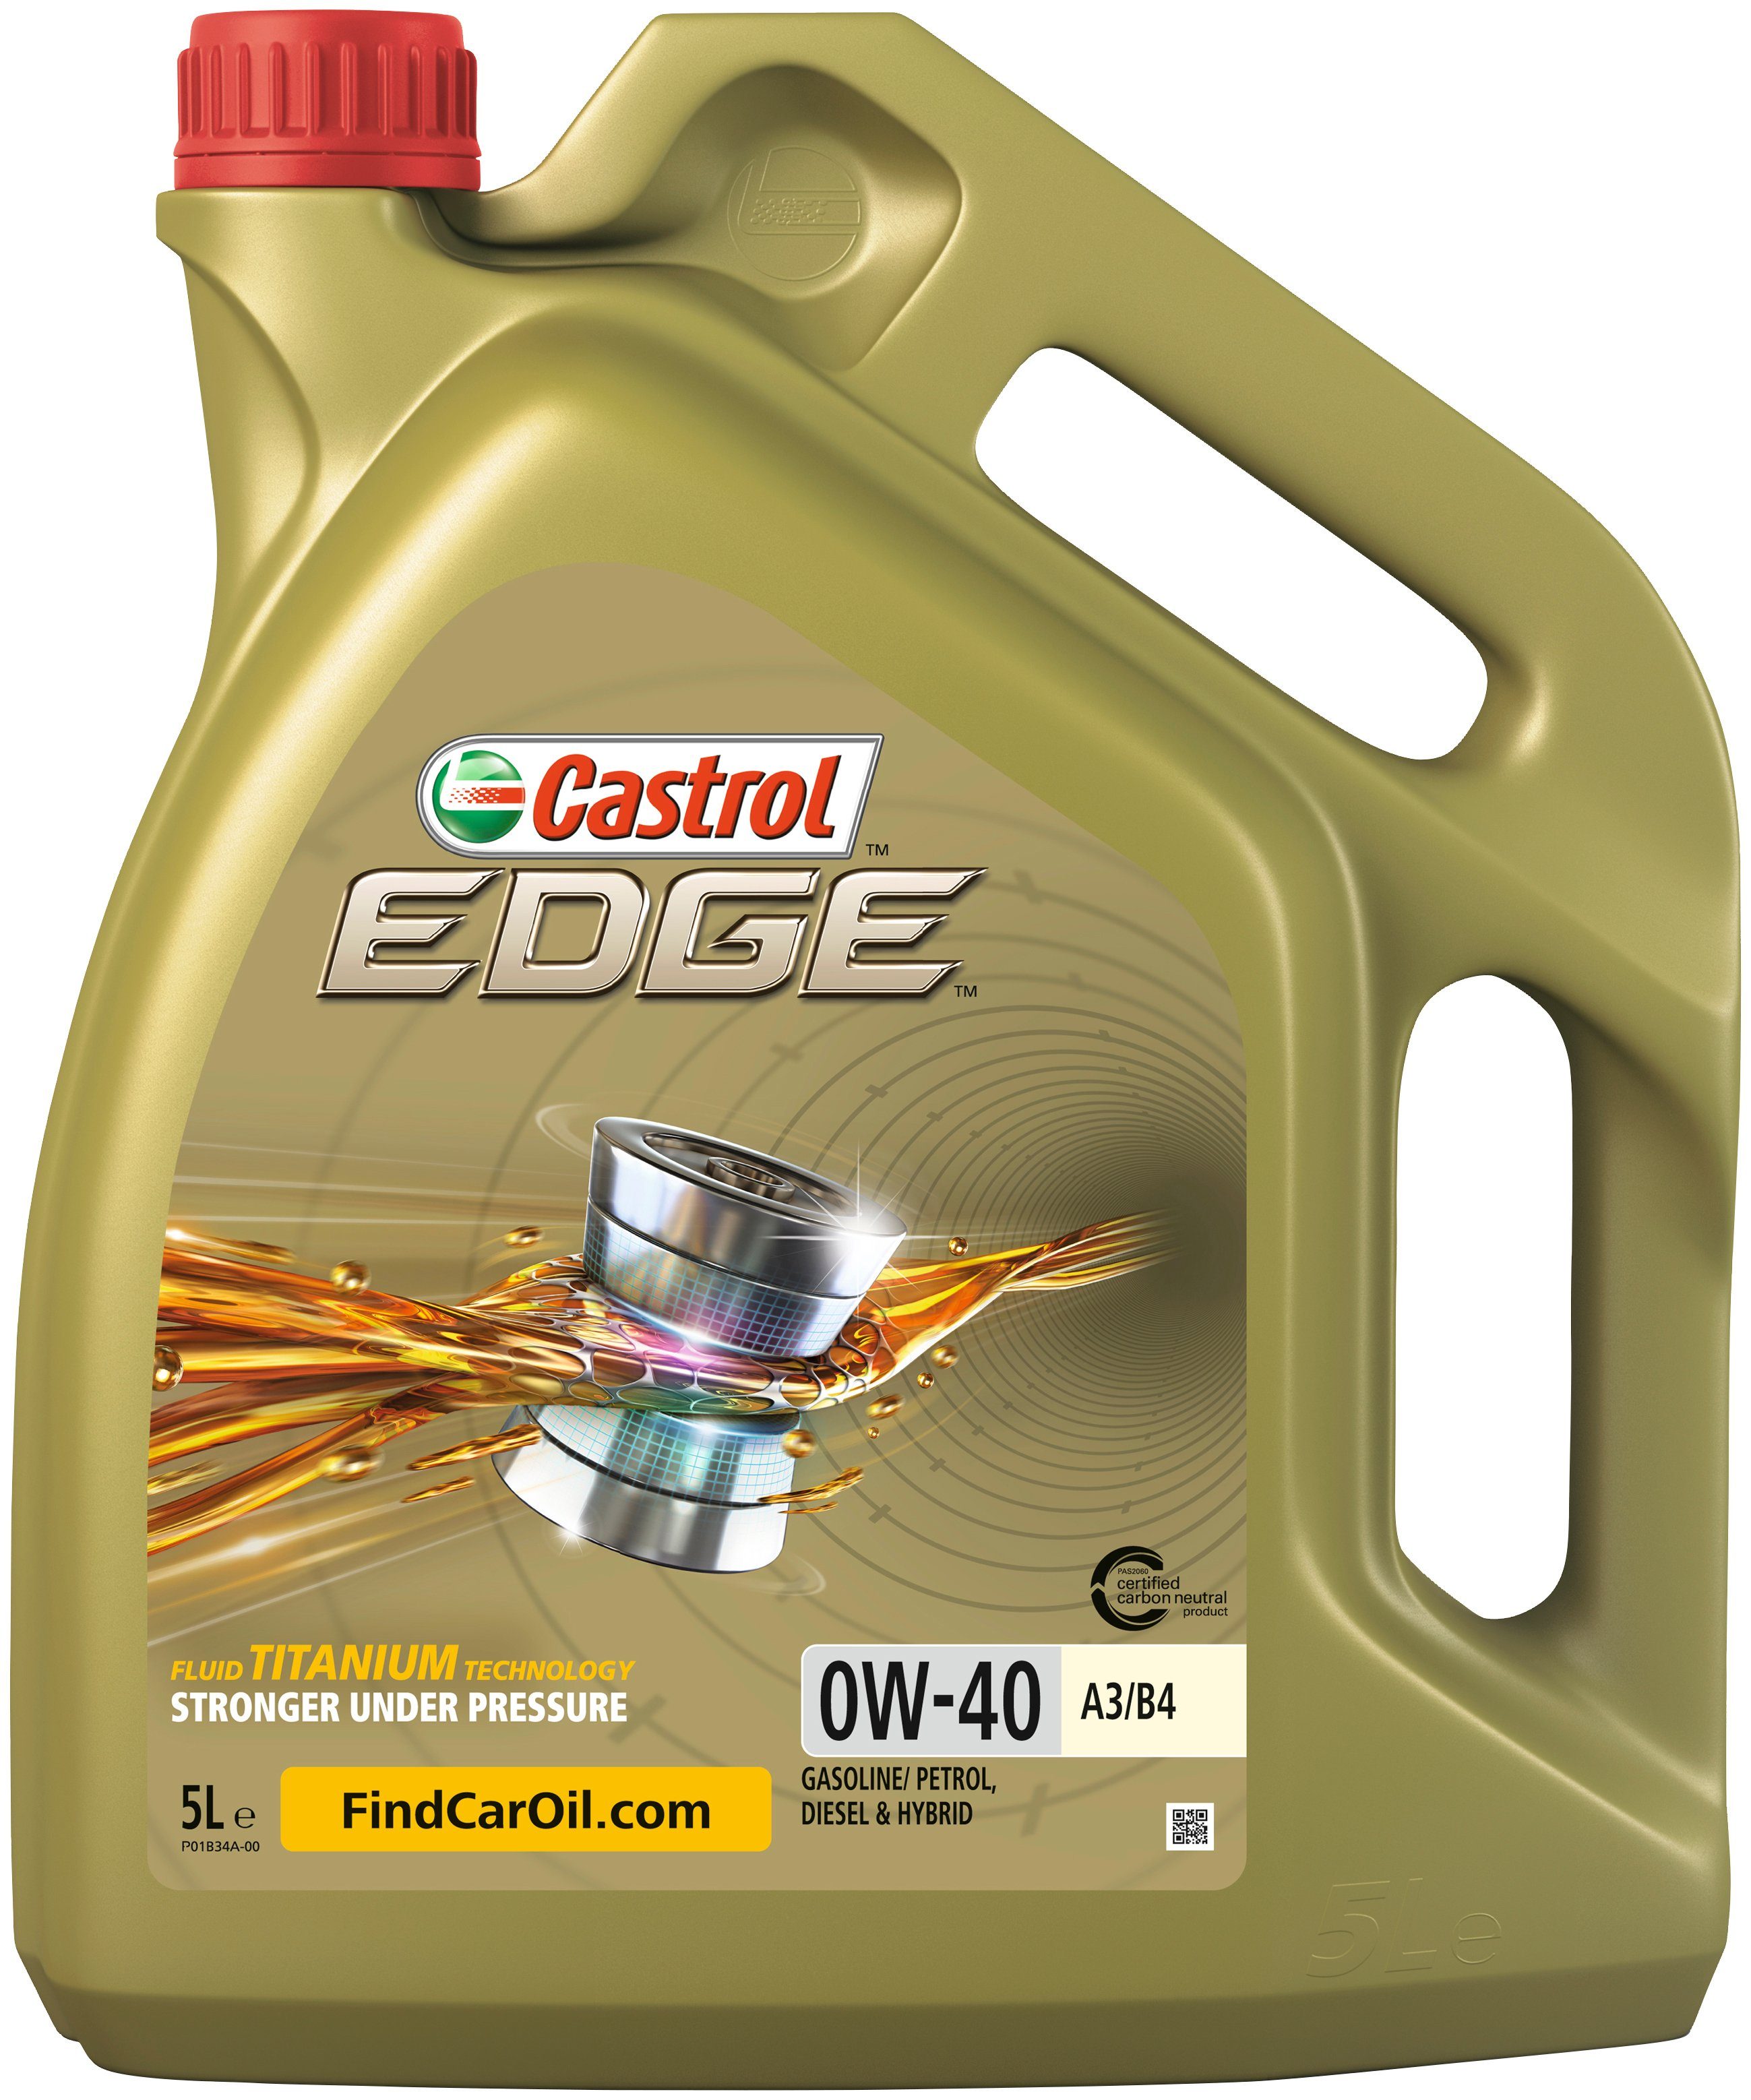 Castrol Motoröl PKW EDGE für A3/B4, Liter, 0W-40 5